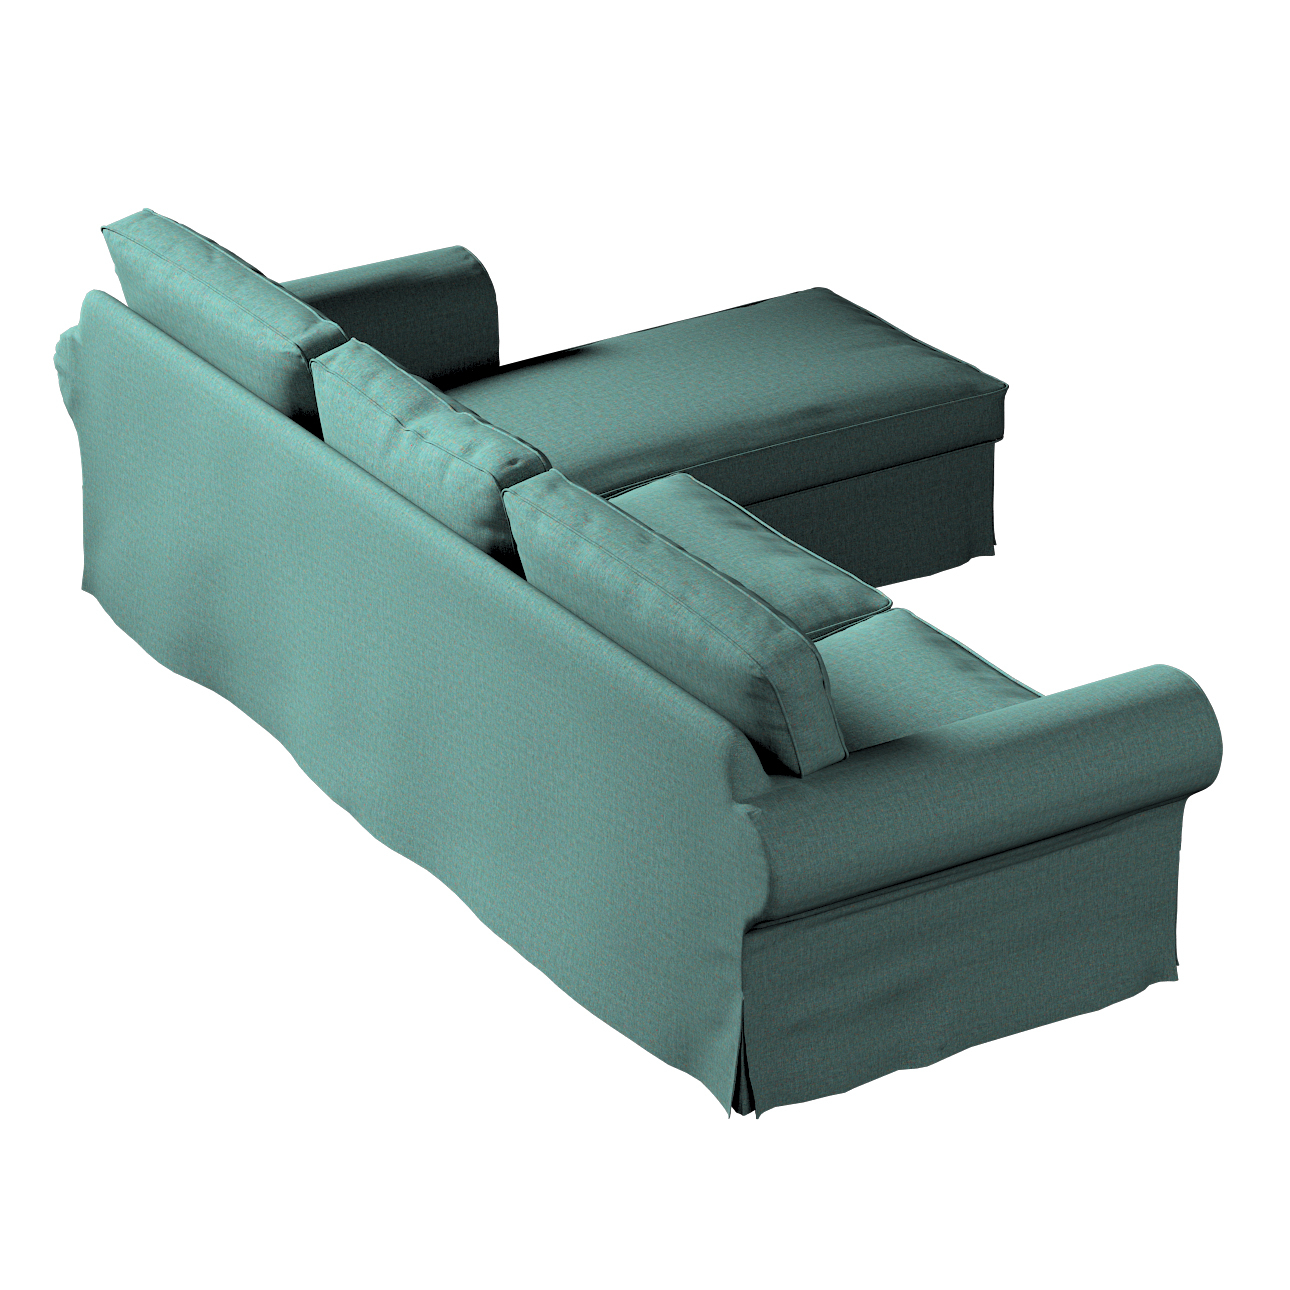 Bezug für Ektorp 2-Sitzer Sofa mit Recamiere, türkis, Ektorp 2-Sitzer Sofab günstig online kaufen